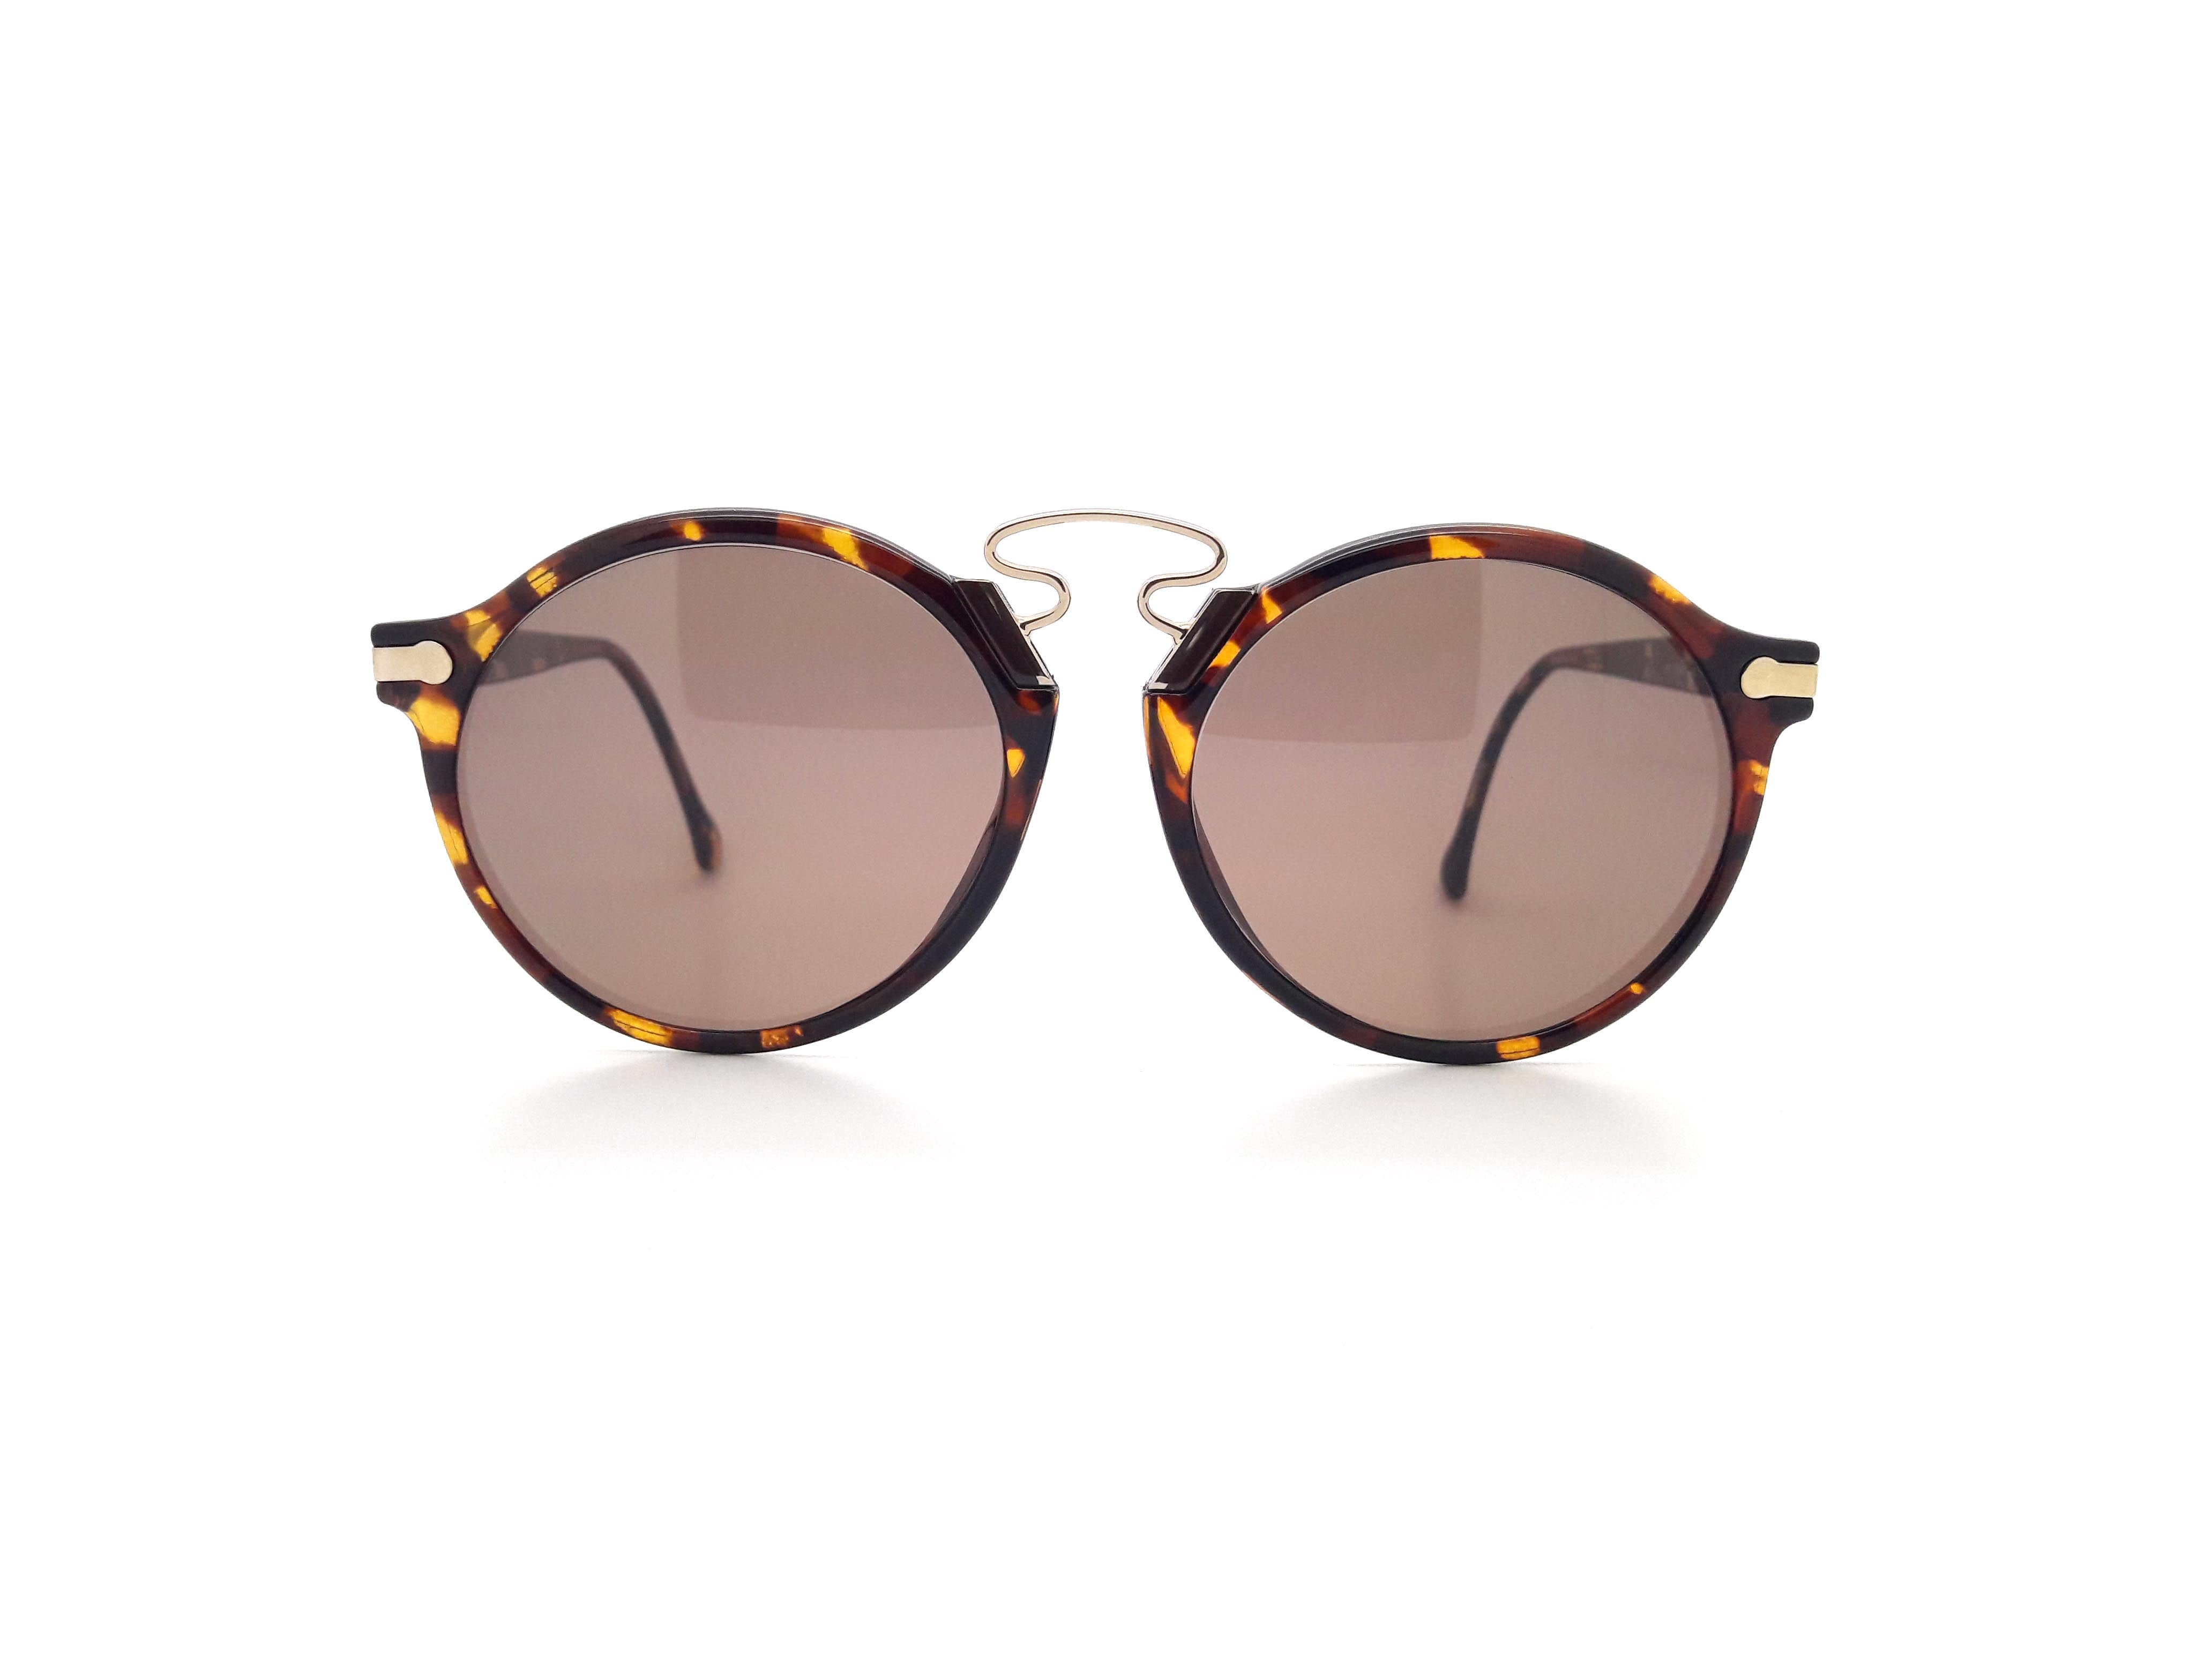 Hugo Boss By Carrera 5161 12 Vintage Sunglasses – Ed & Sarna Vintage Eyewear